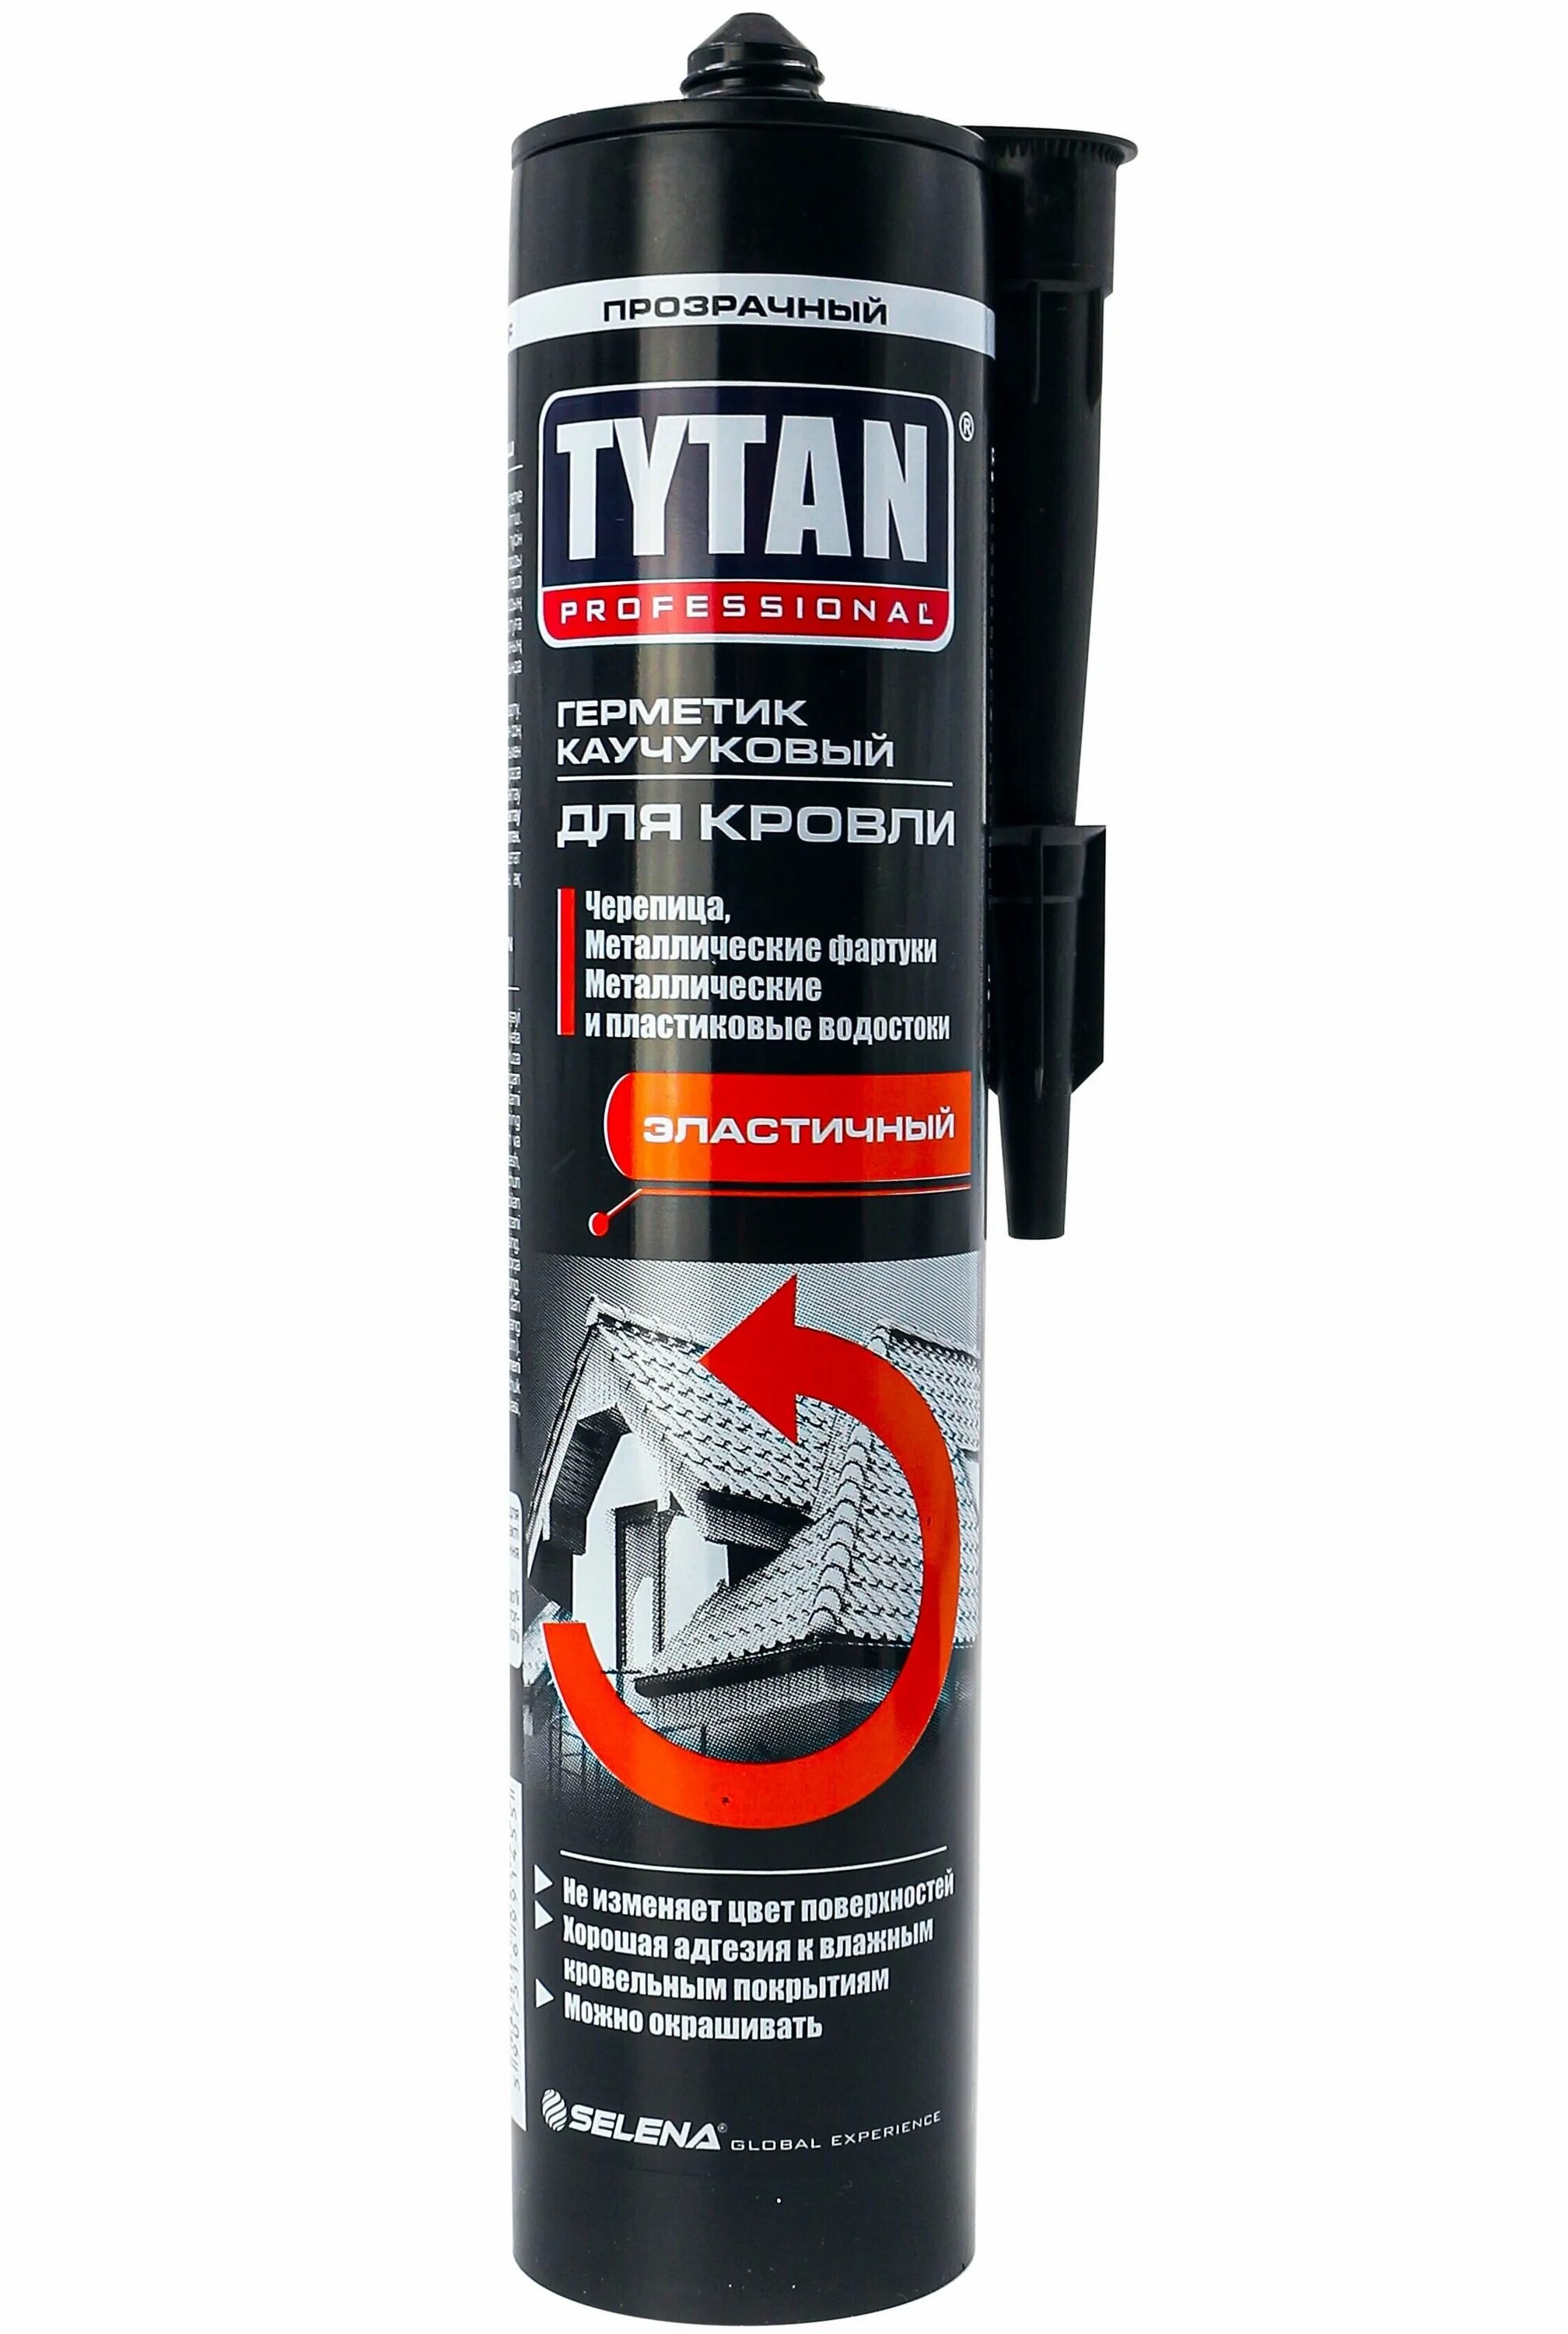 Герметик Tytan professional каучуковый бесцветный 310мл. Tytan специализированный герметик для кровли бесцветный 310 мл. Герметик Tytan каучуковый для кровли. Tytan professional герметик каучуковый для кровли прозрачный 310 мл. Герметик tytan professional 310 мл